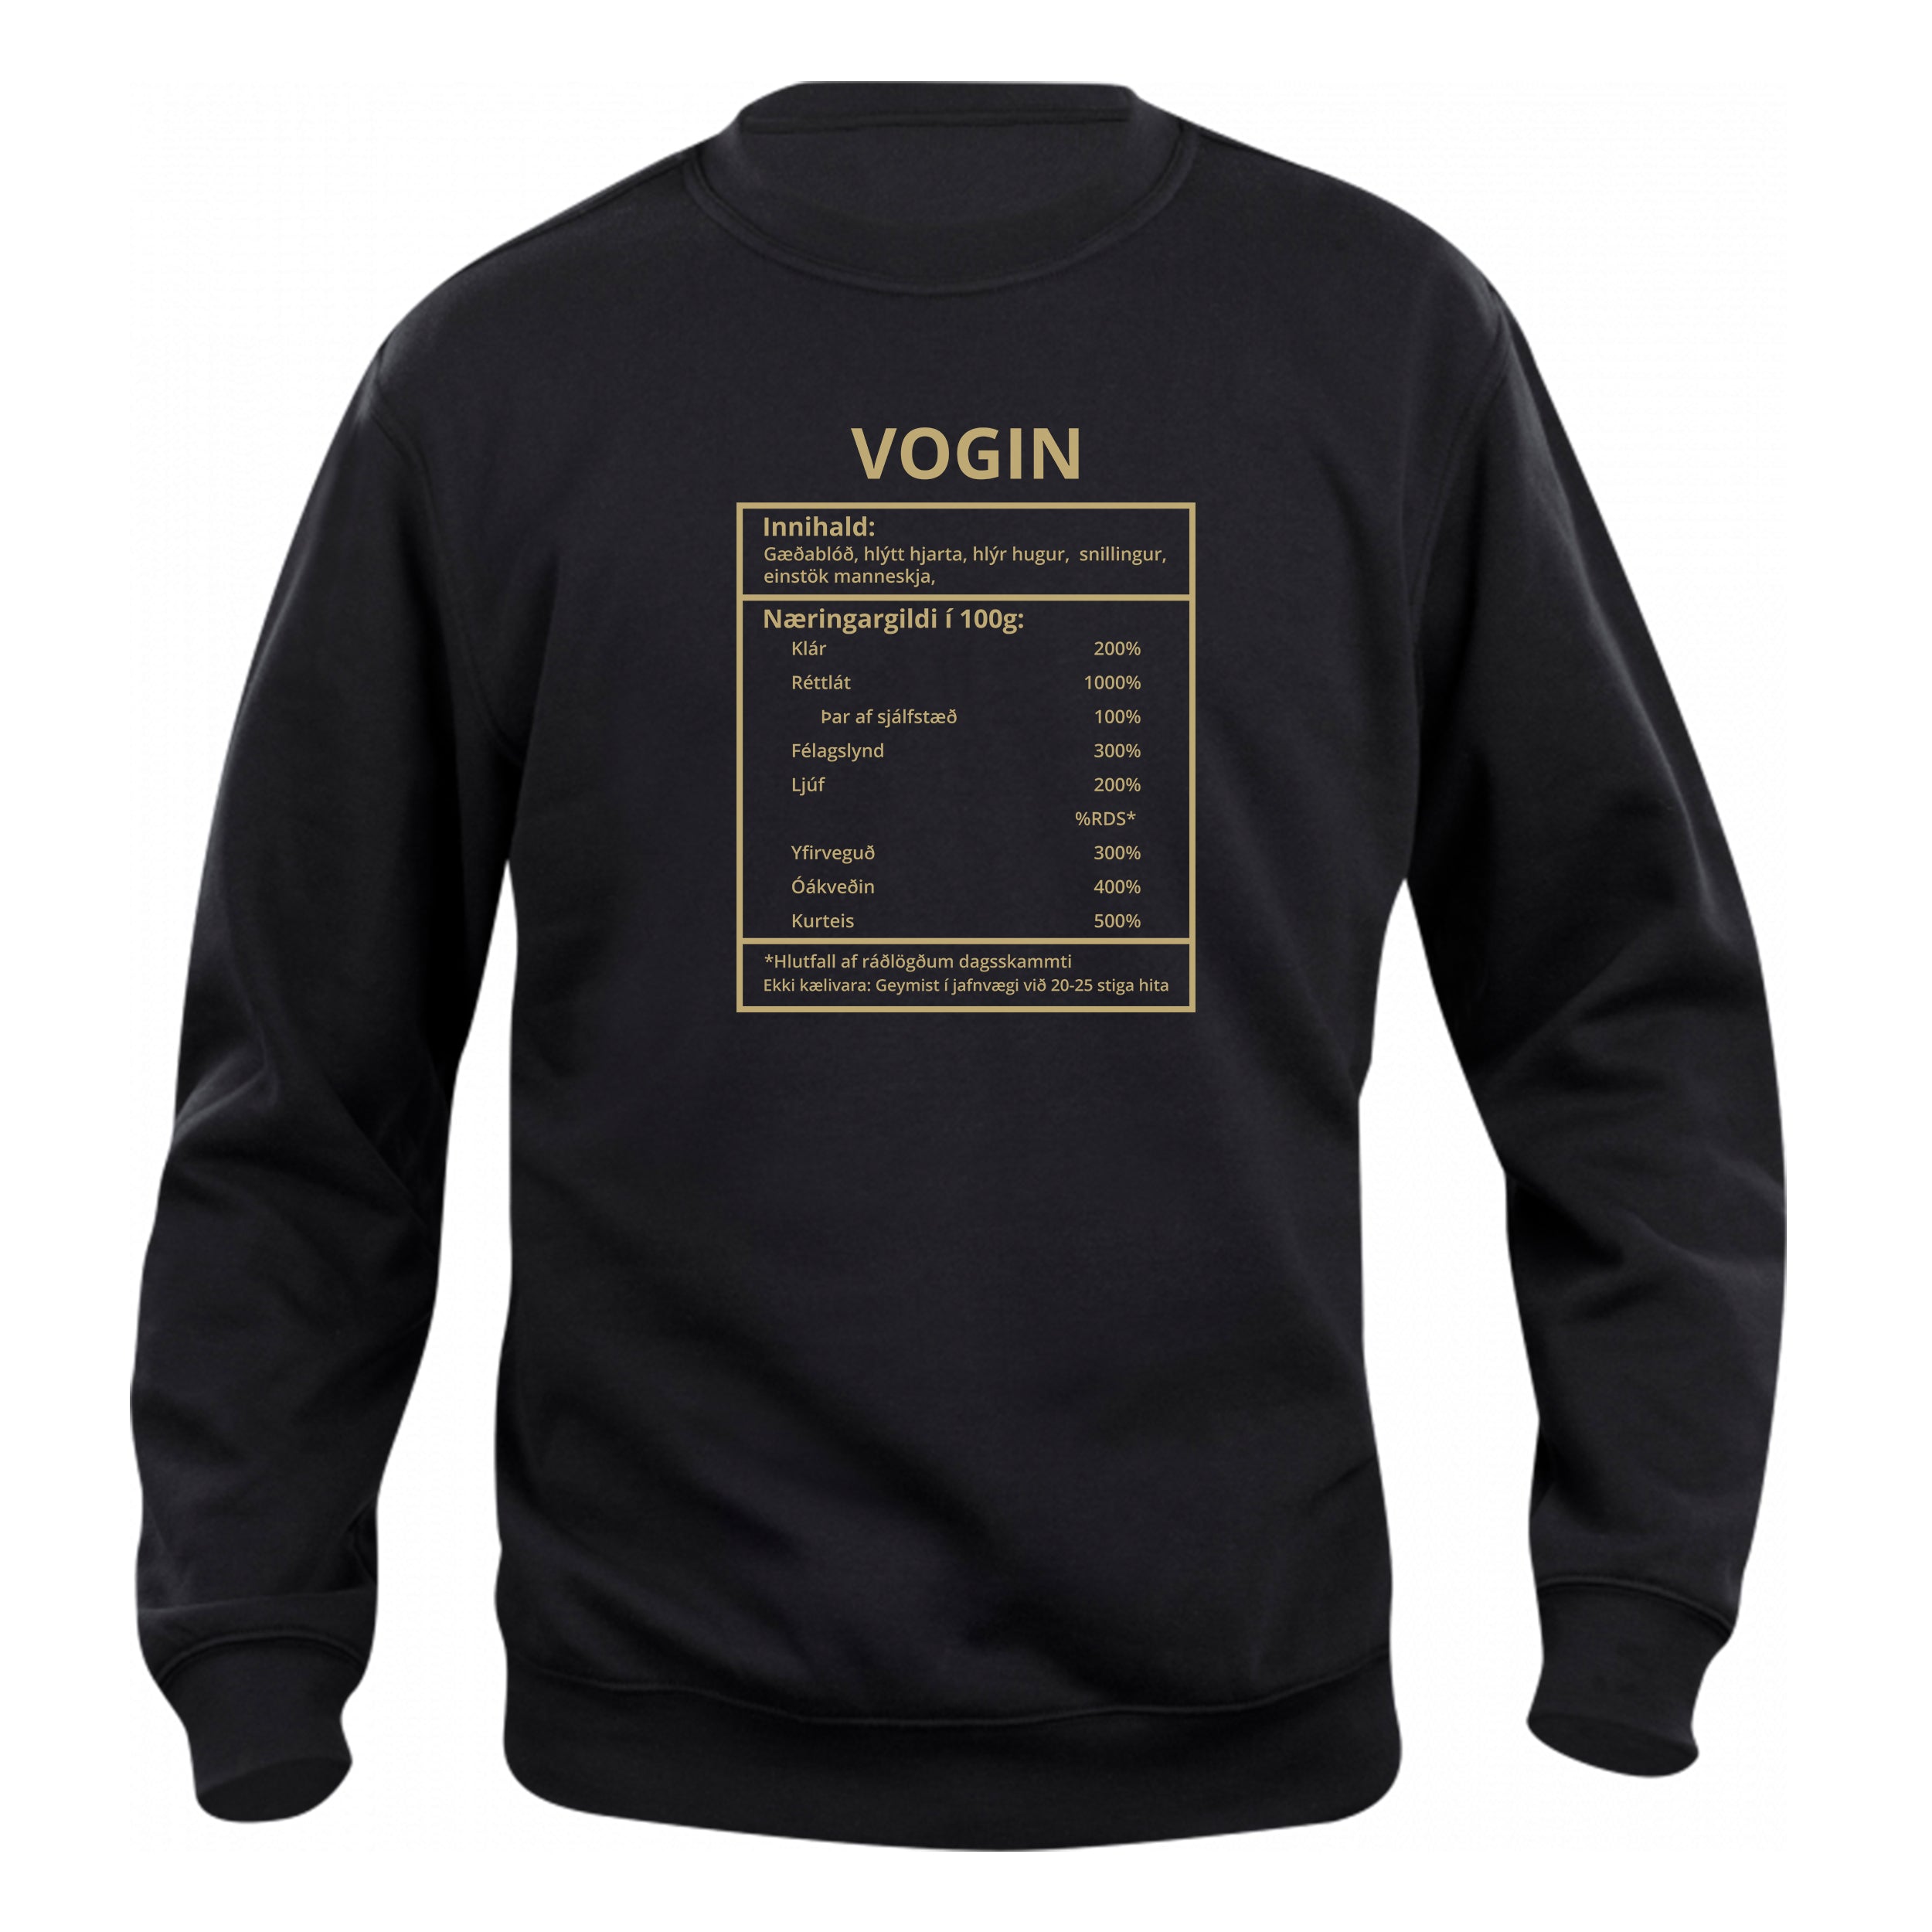 Vogin - sweatshirt